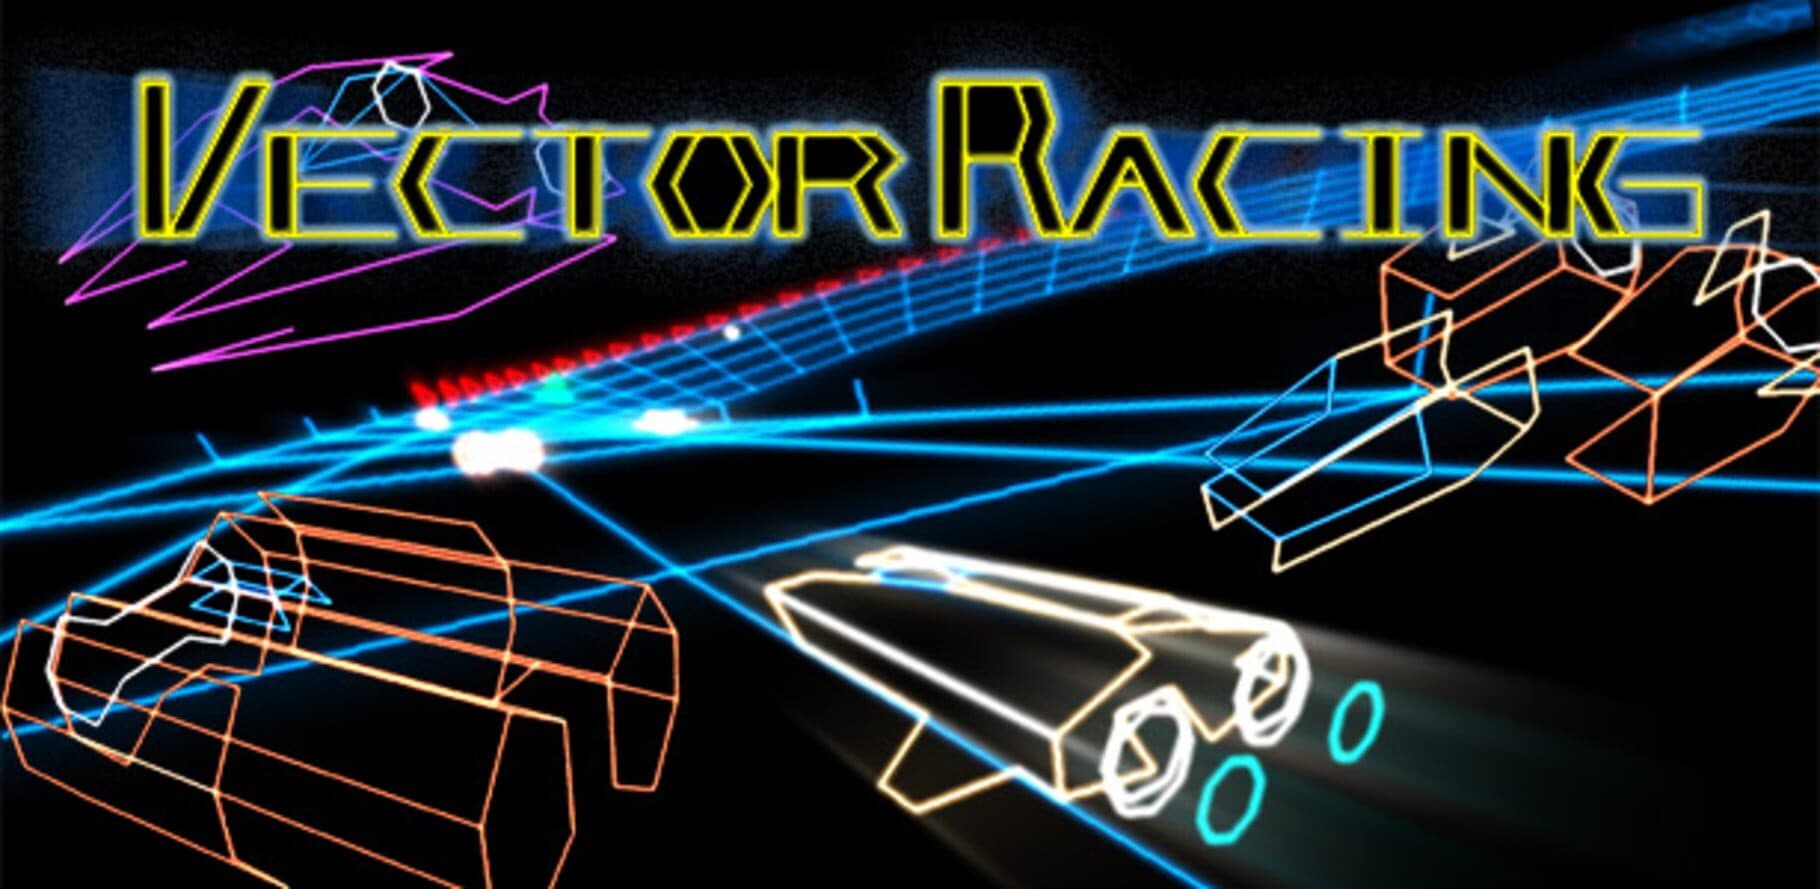 Vector Racing cover art